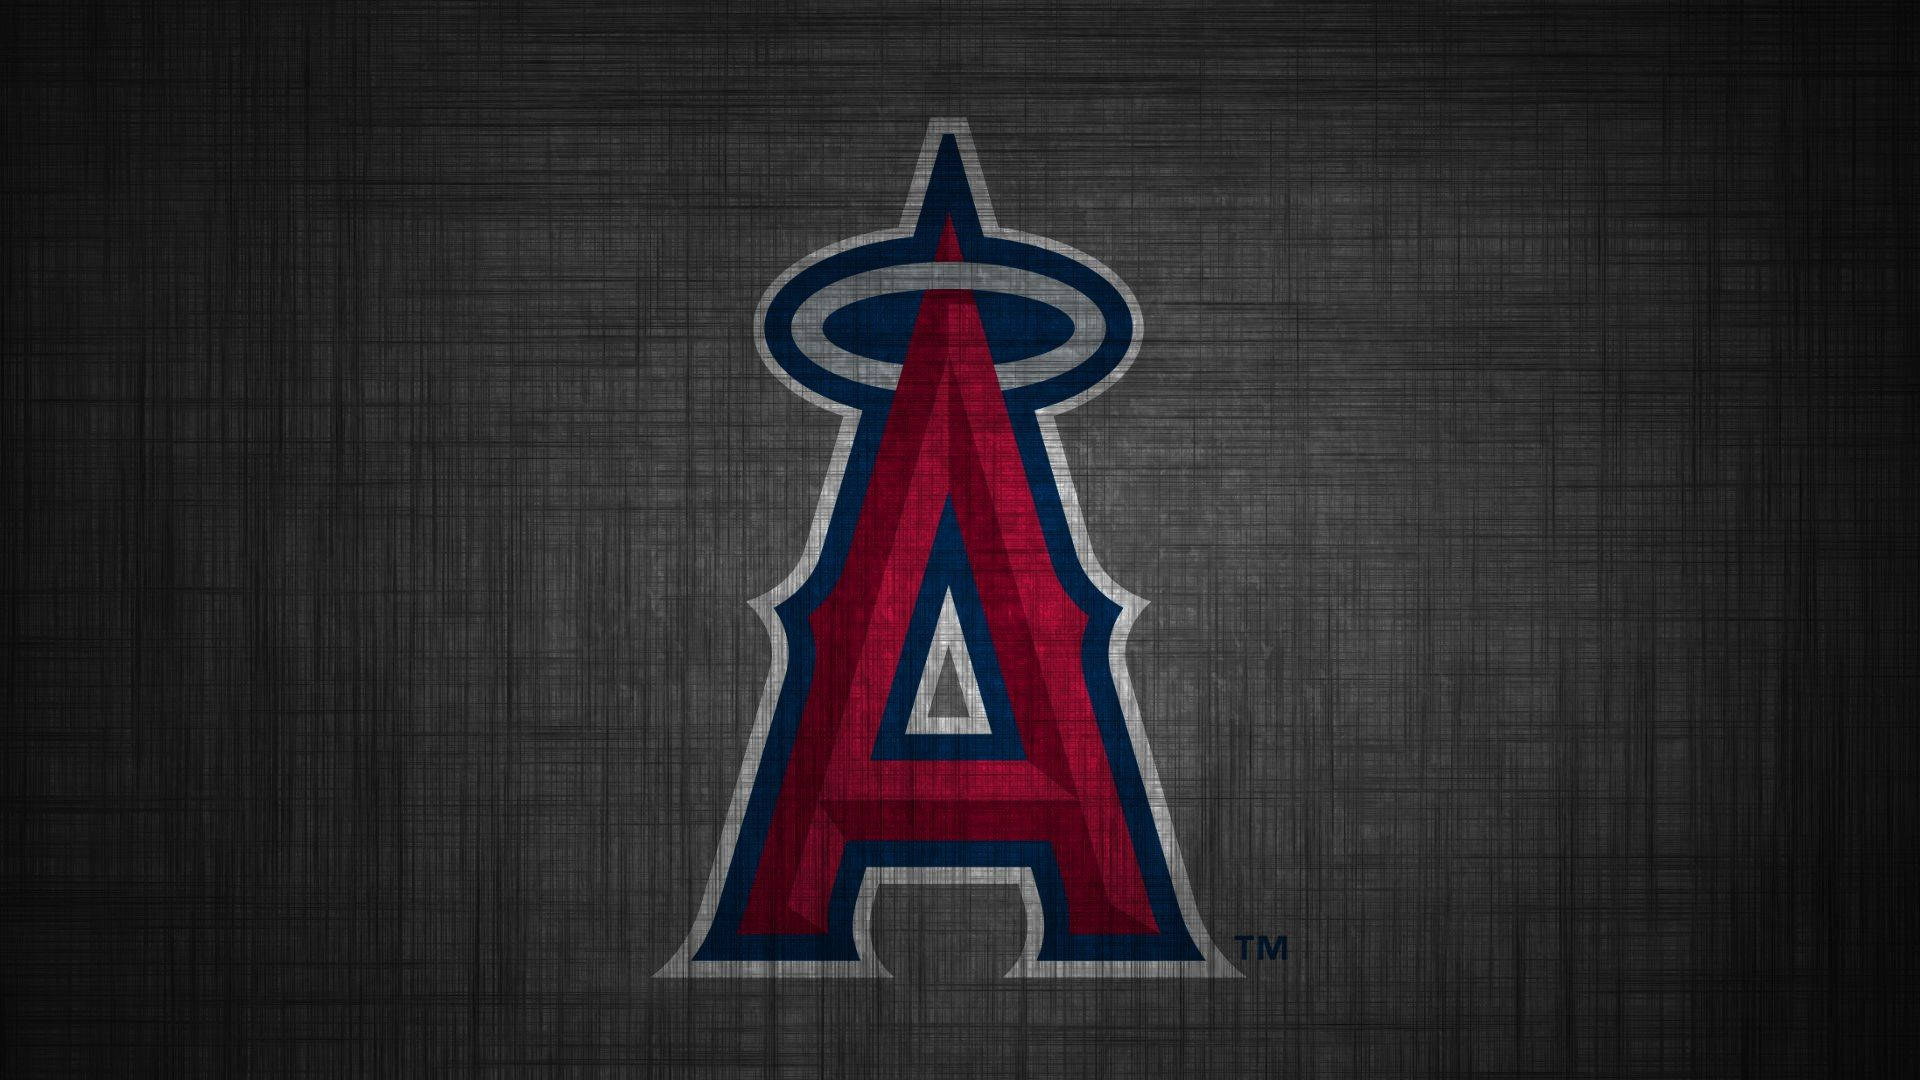 Bakgrundsbildmed Los Angeles Angels-logotypen På Grått. Wallpaper